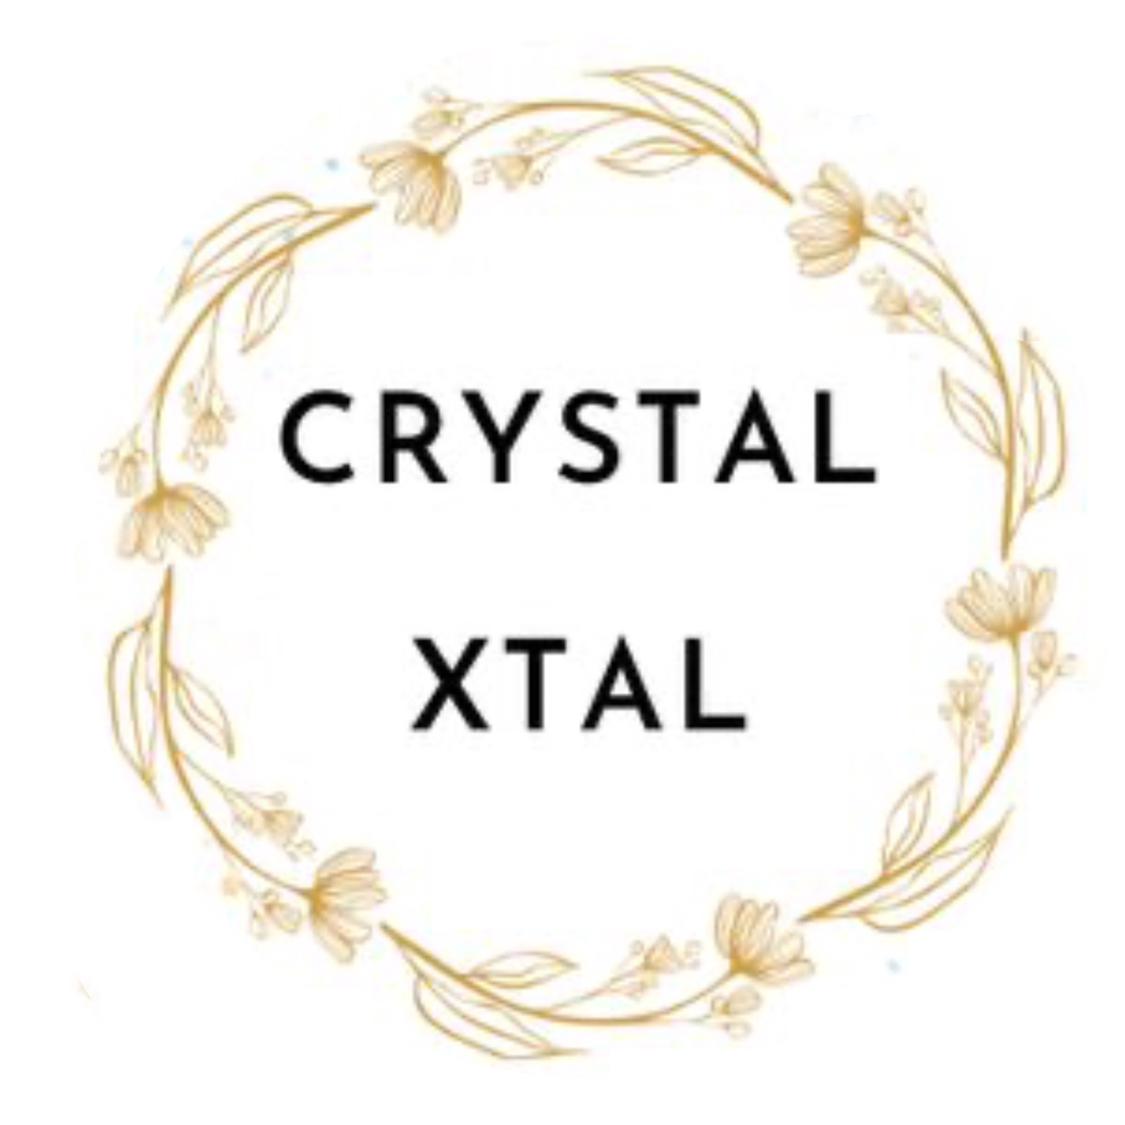 Crystalxtal